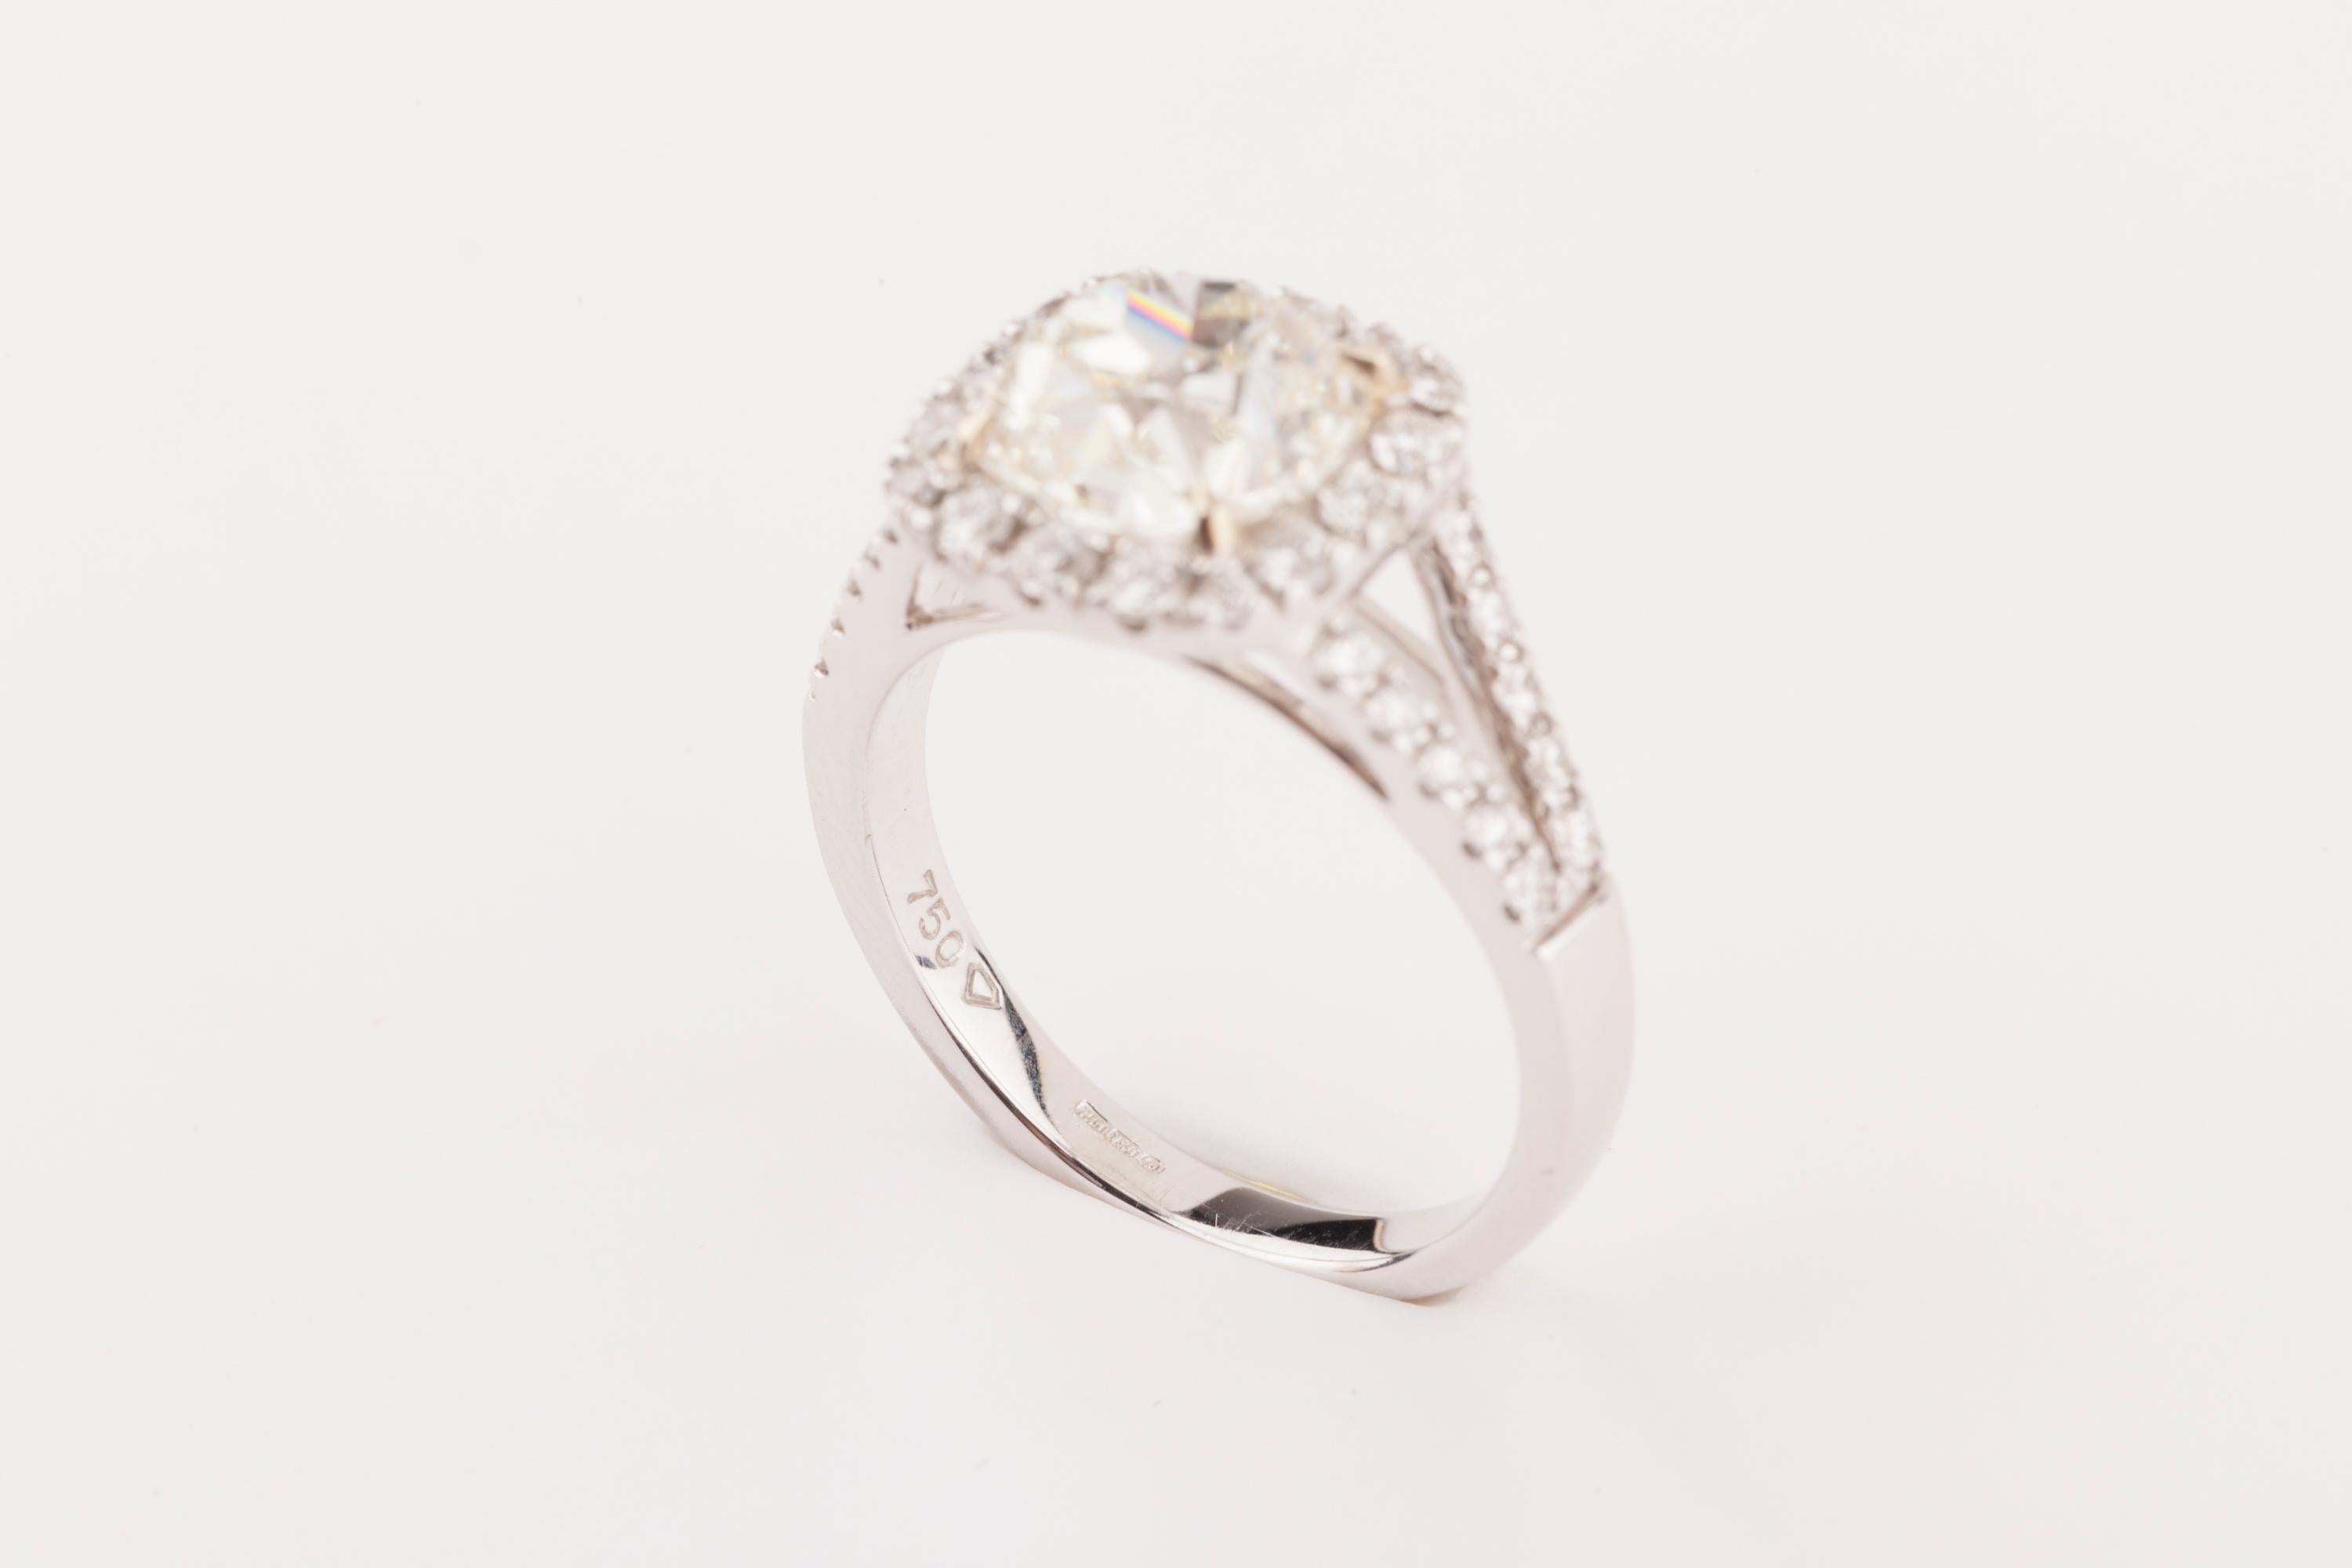 Women's Certified 2.61 Carat Diamond Engagement Ring